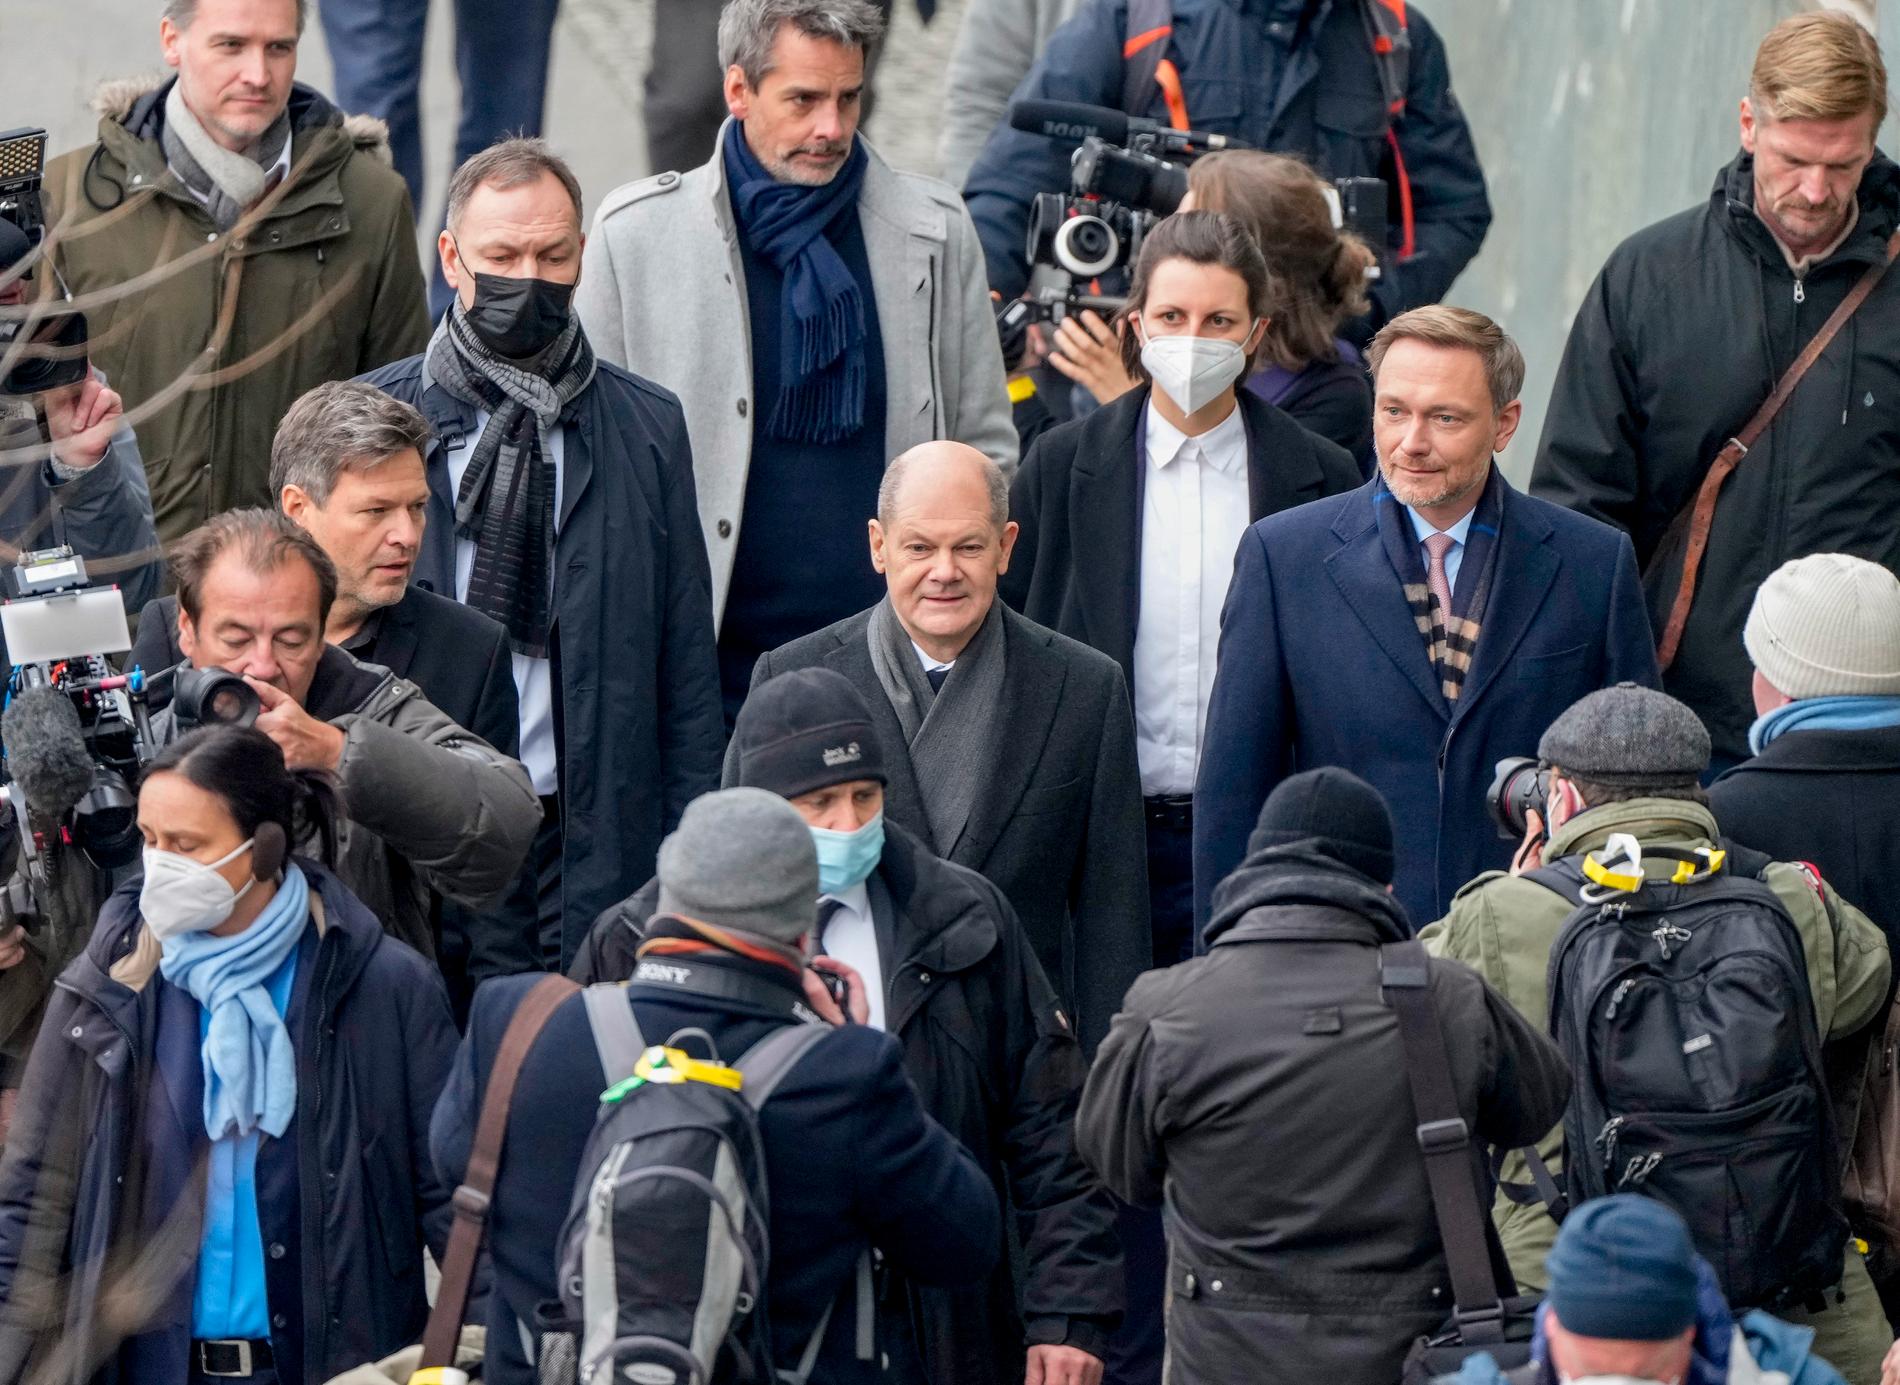 De grönas Robert Habeck (till vänster), tillträdande närings- och klimatminister, Socialdemokraternas Olaf Scholz (mitten), tillträdande förbundskansler, och liberala FDP:s Christian Lindner, tillträdande finansminister, efter undertecknandet av koalitionsavtalet i Berlin.